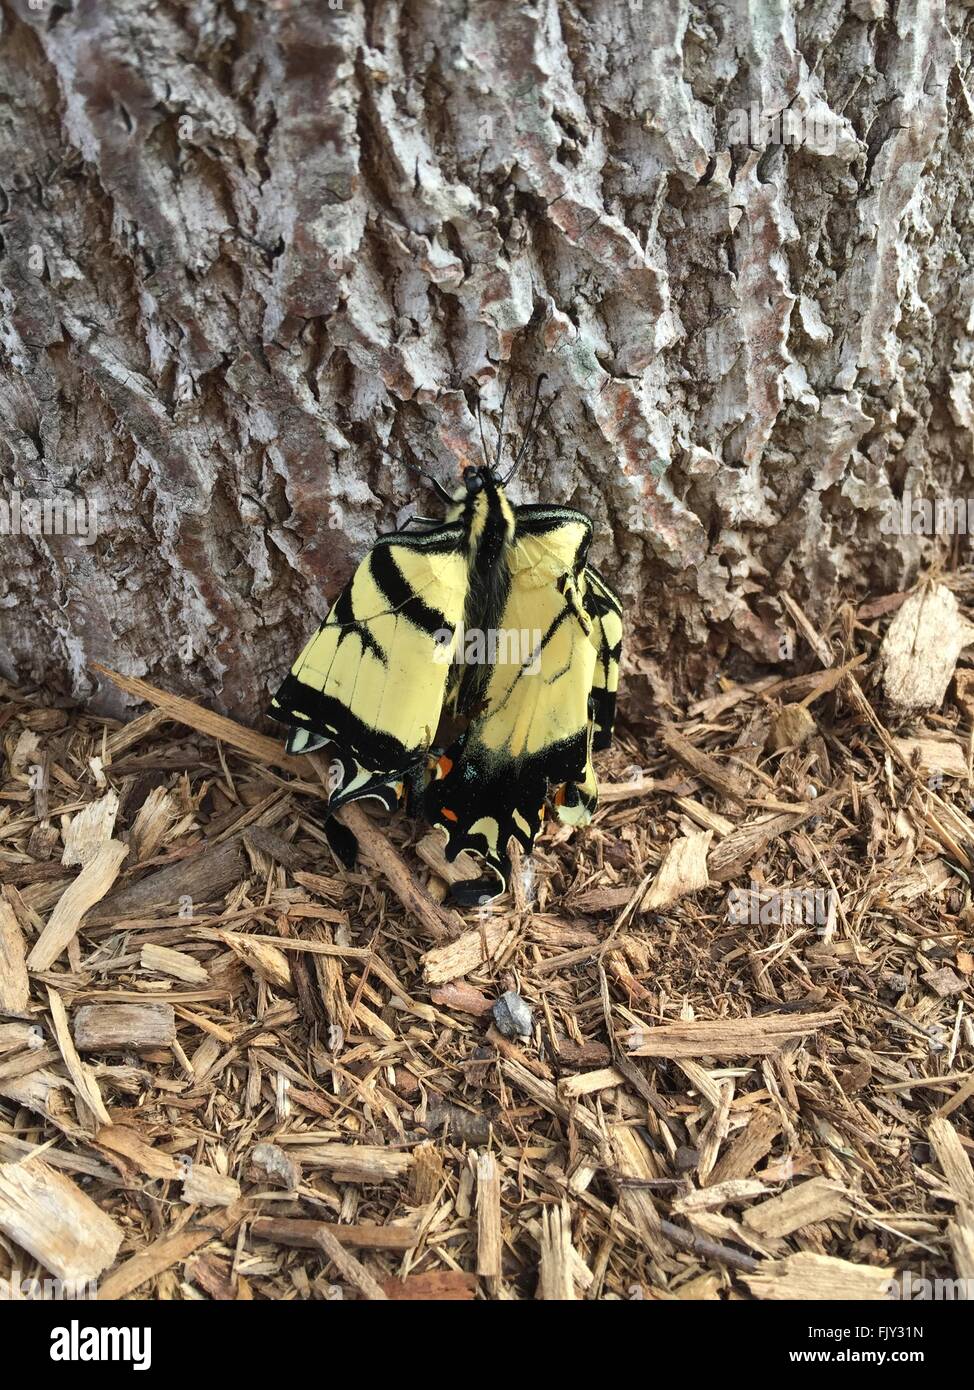 Lesionado especie oriental mariposa con aleta dañada Foto de stock